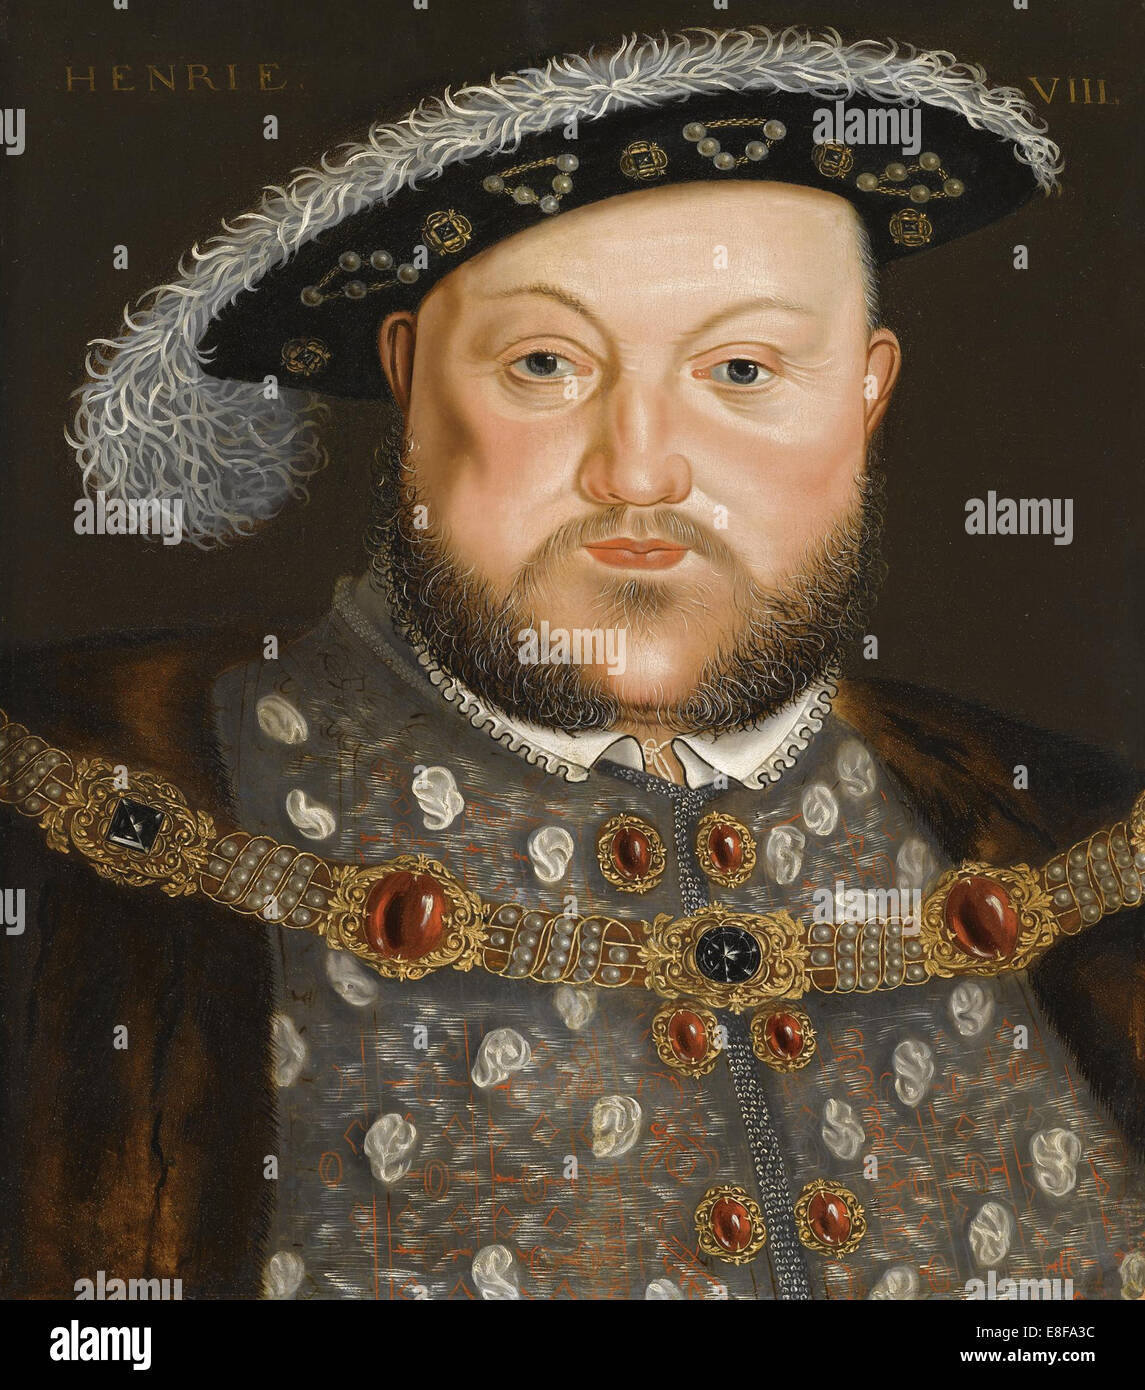 Portrait du Roi Henry VIII d'Angleterre. Artiste : Holbein, Hans, (Cercle de) Banque D'Images